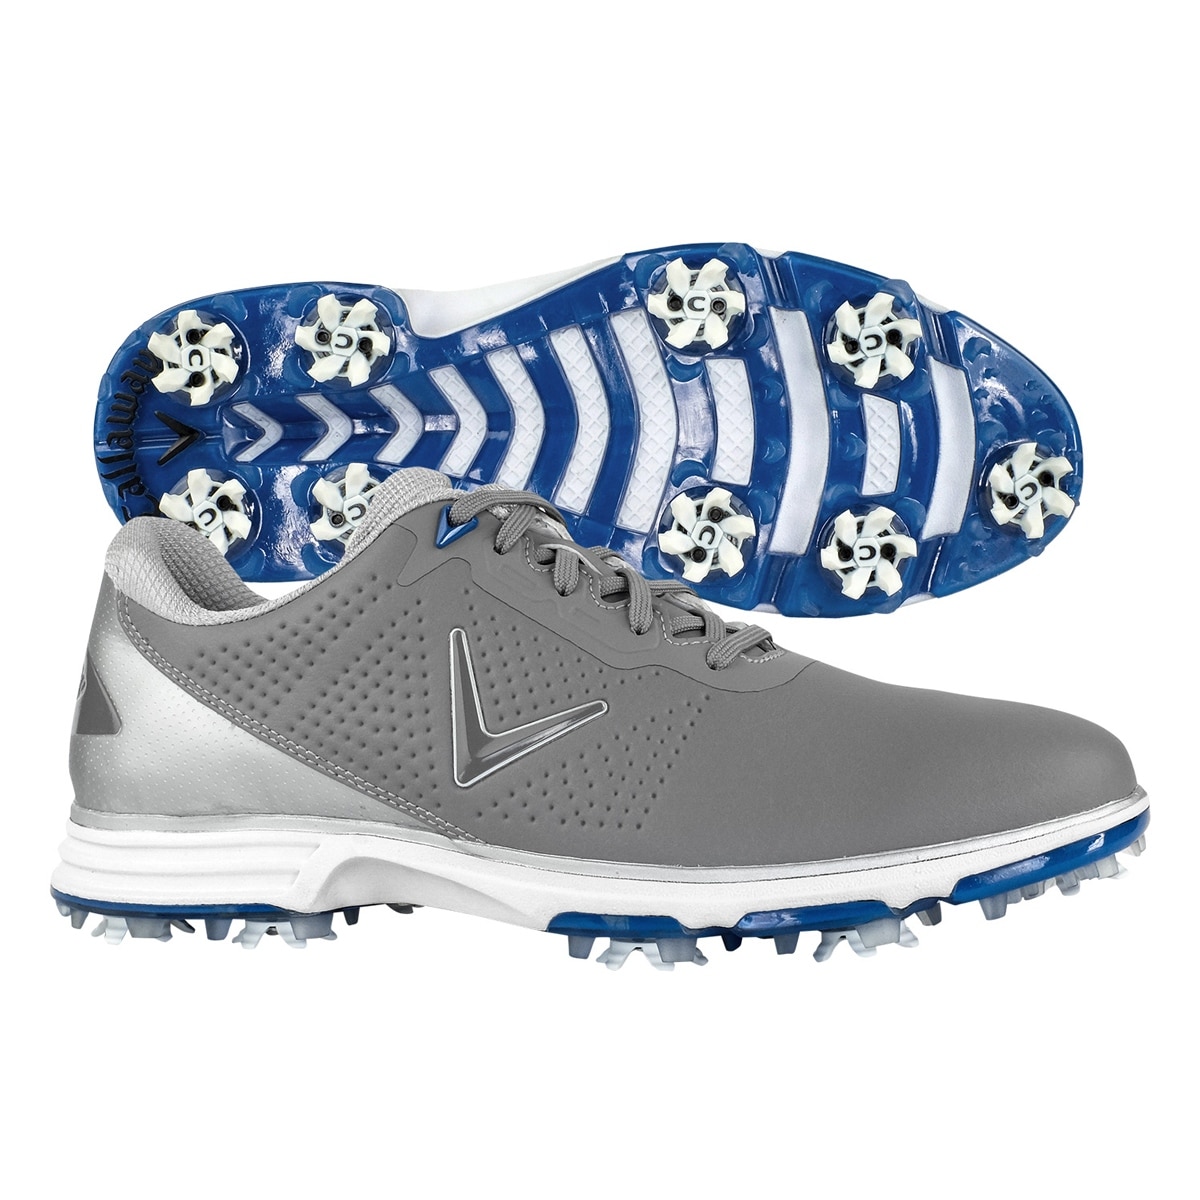 men's coronado golf shoes